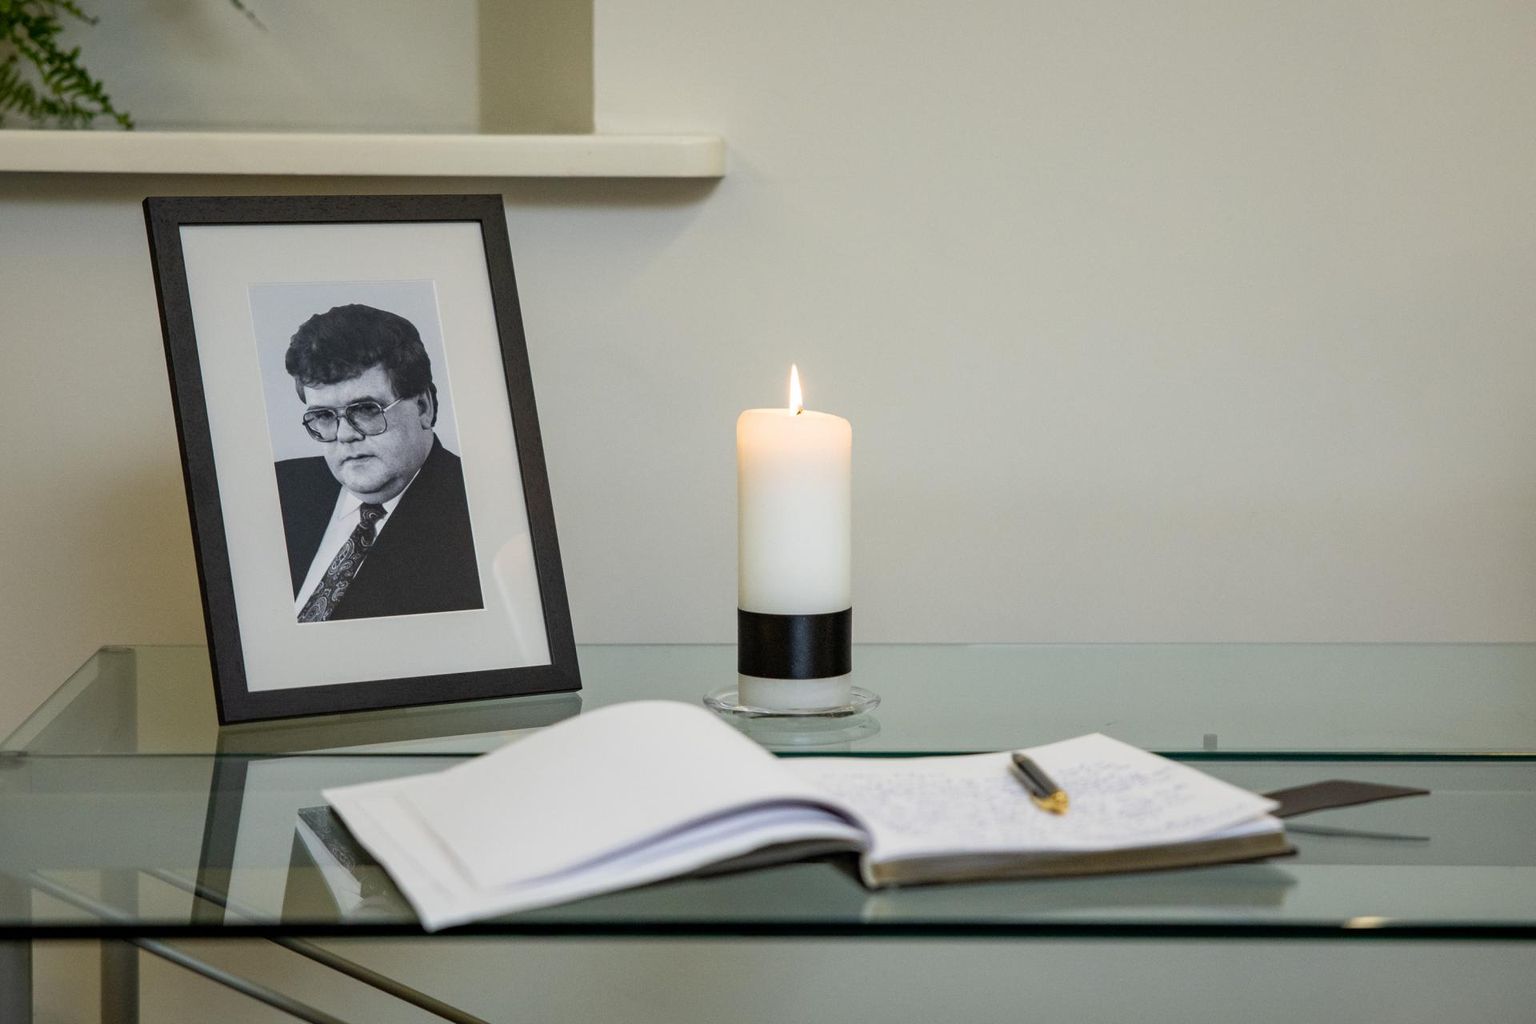 Igaunijā notiek mirušā 72 gadus vecā Igaunijas politikas veterāna Edgara Savisāra bēres.